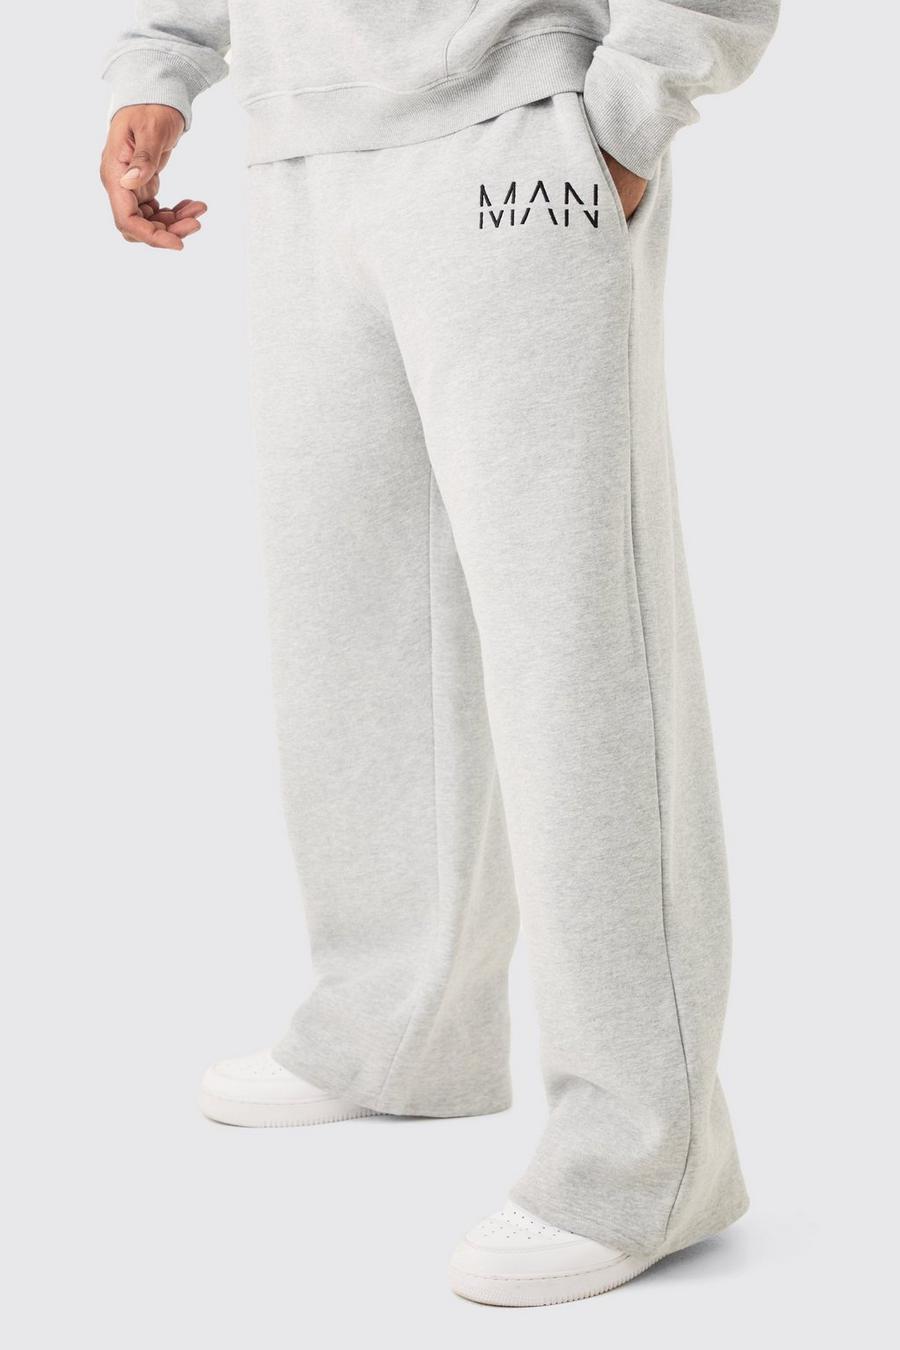 Pantalón deportivo Plus holgado gris jaspeado con letras MAN, Grey marl